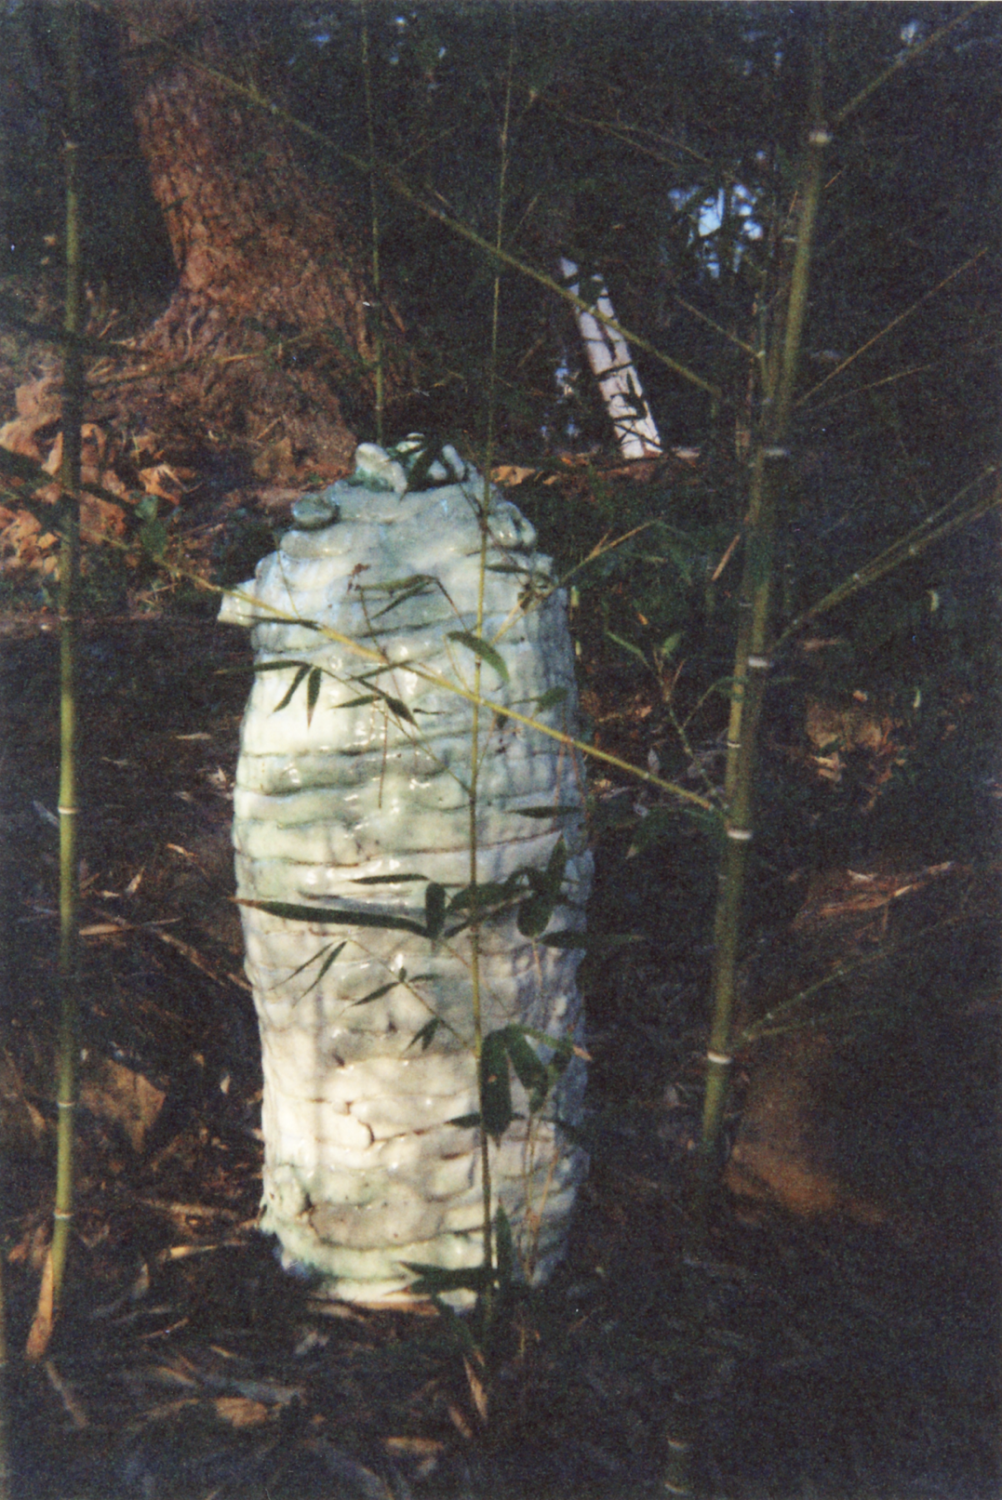 Gallifa ceramic, 1992